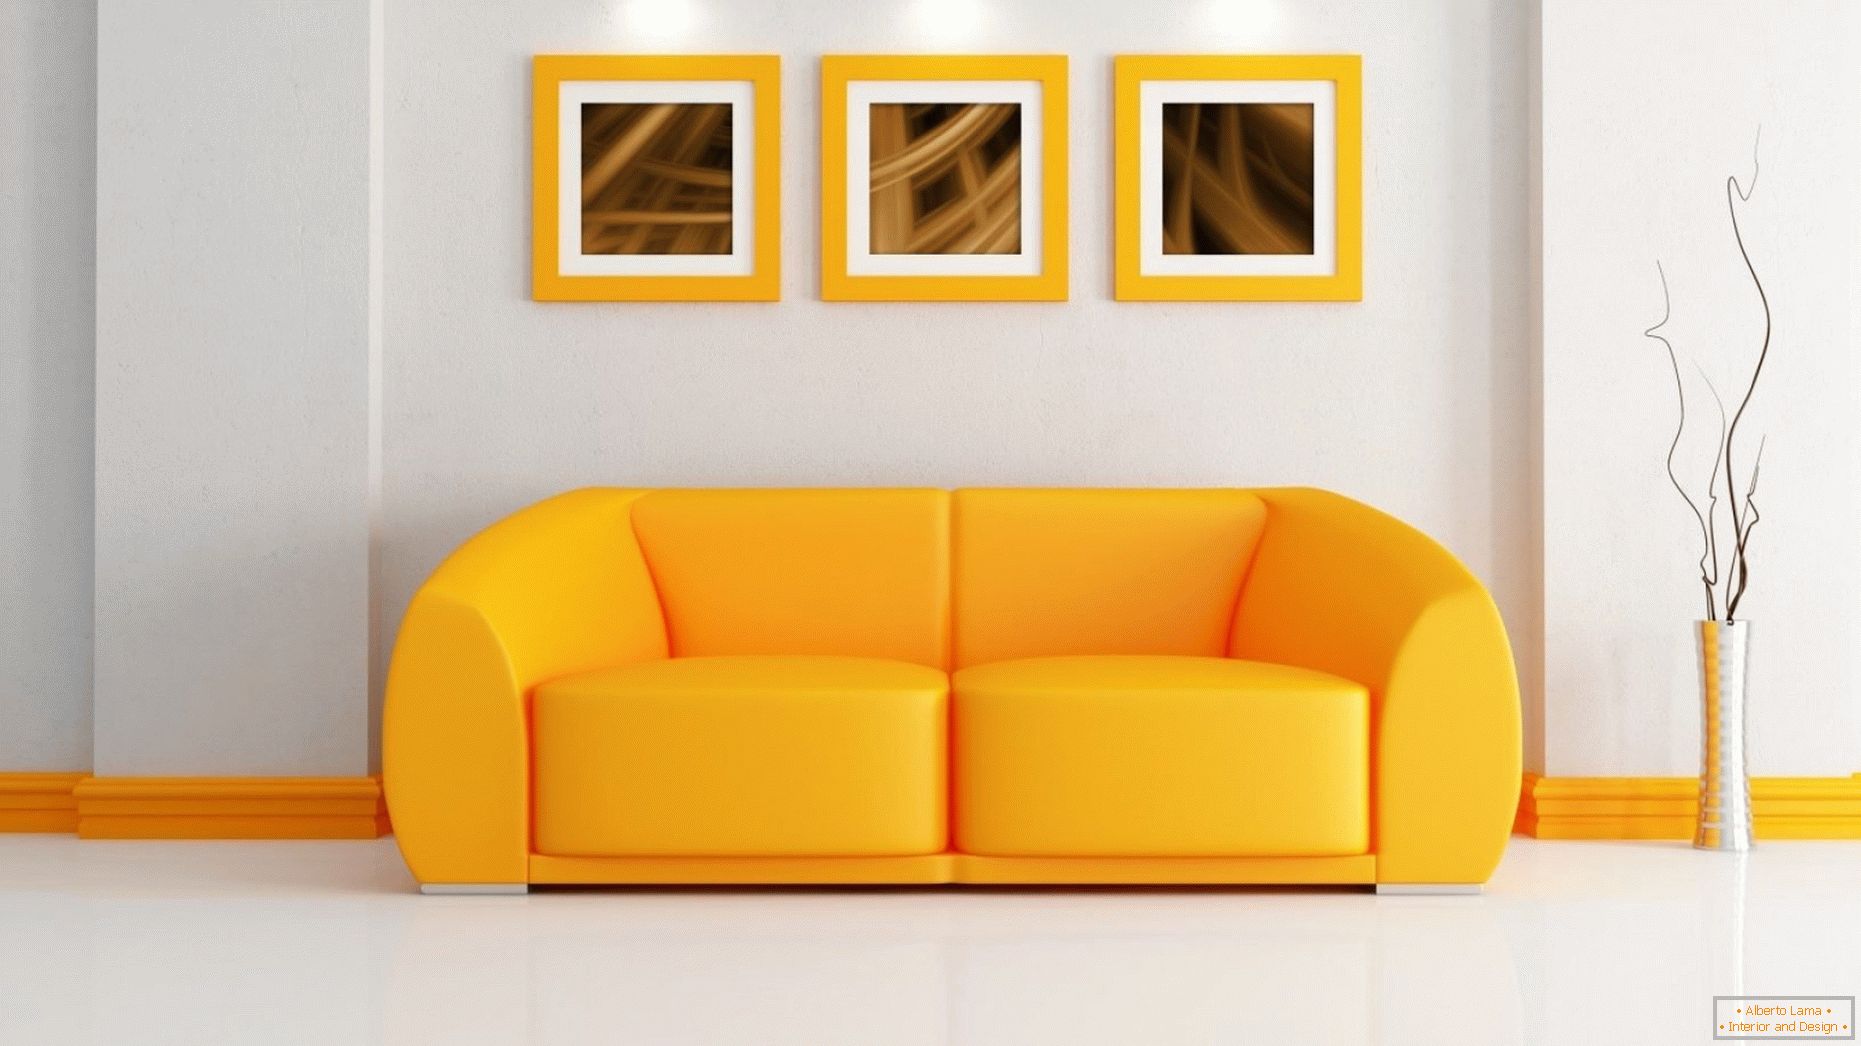 Interior luminos cu o canapea portocalie